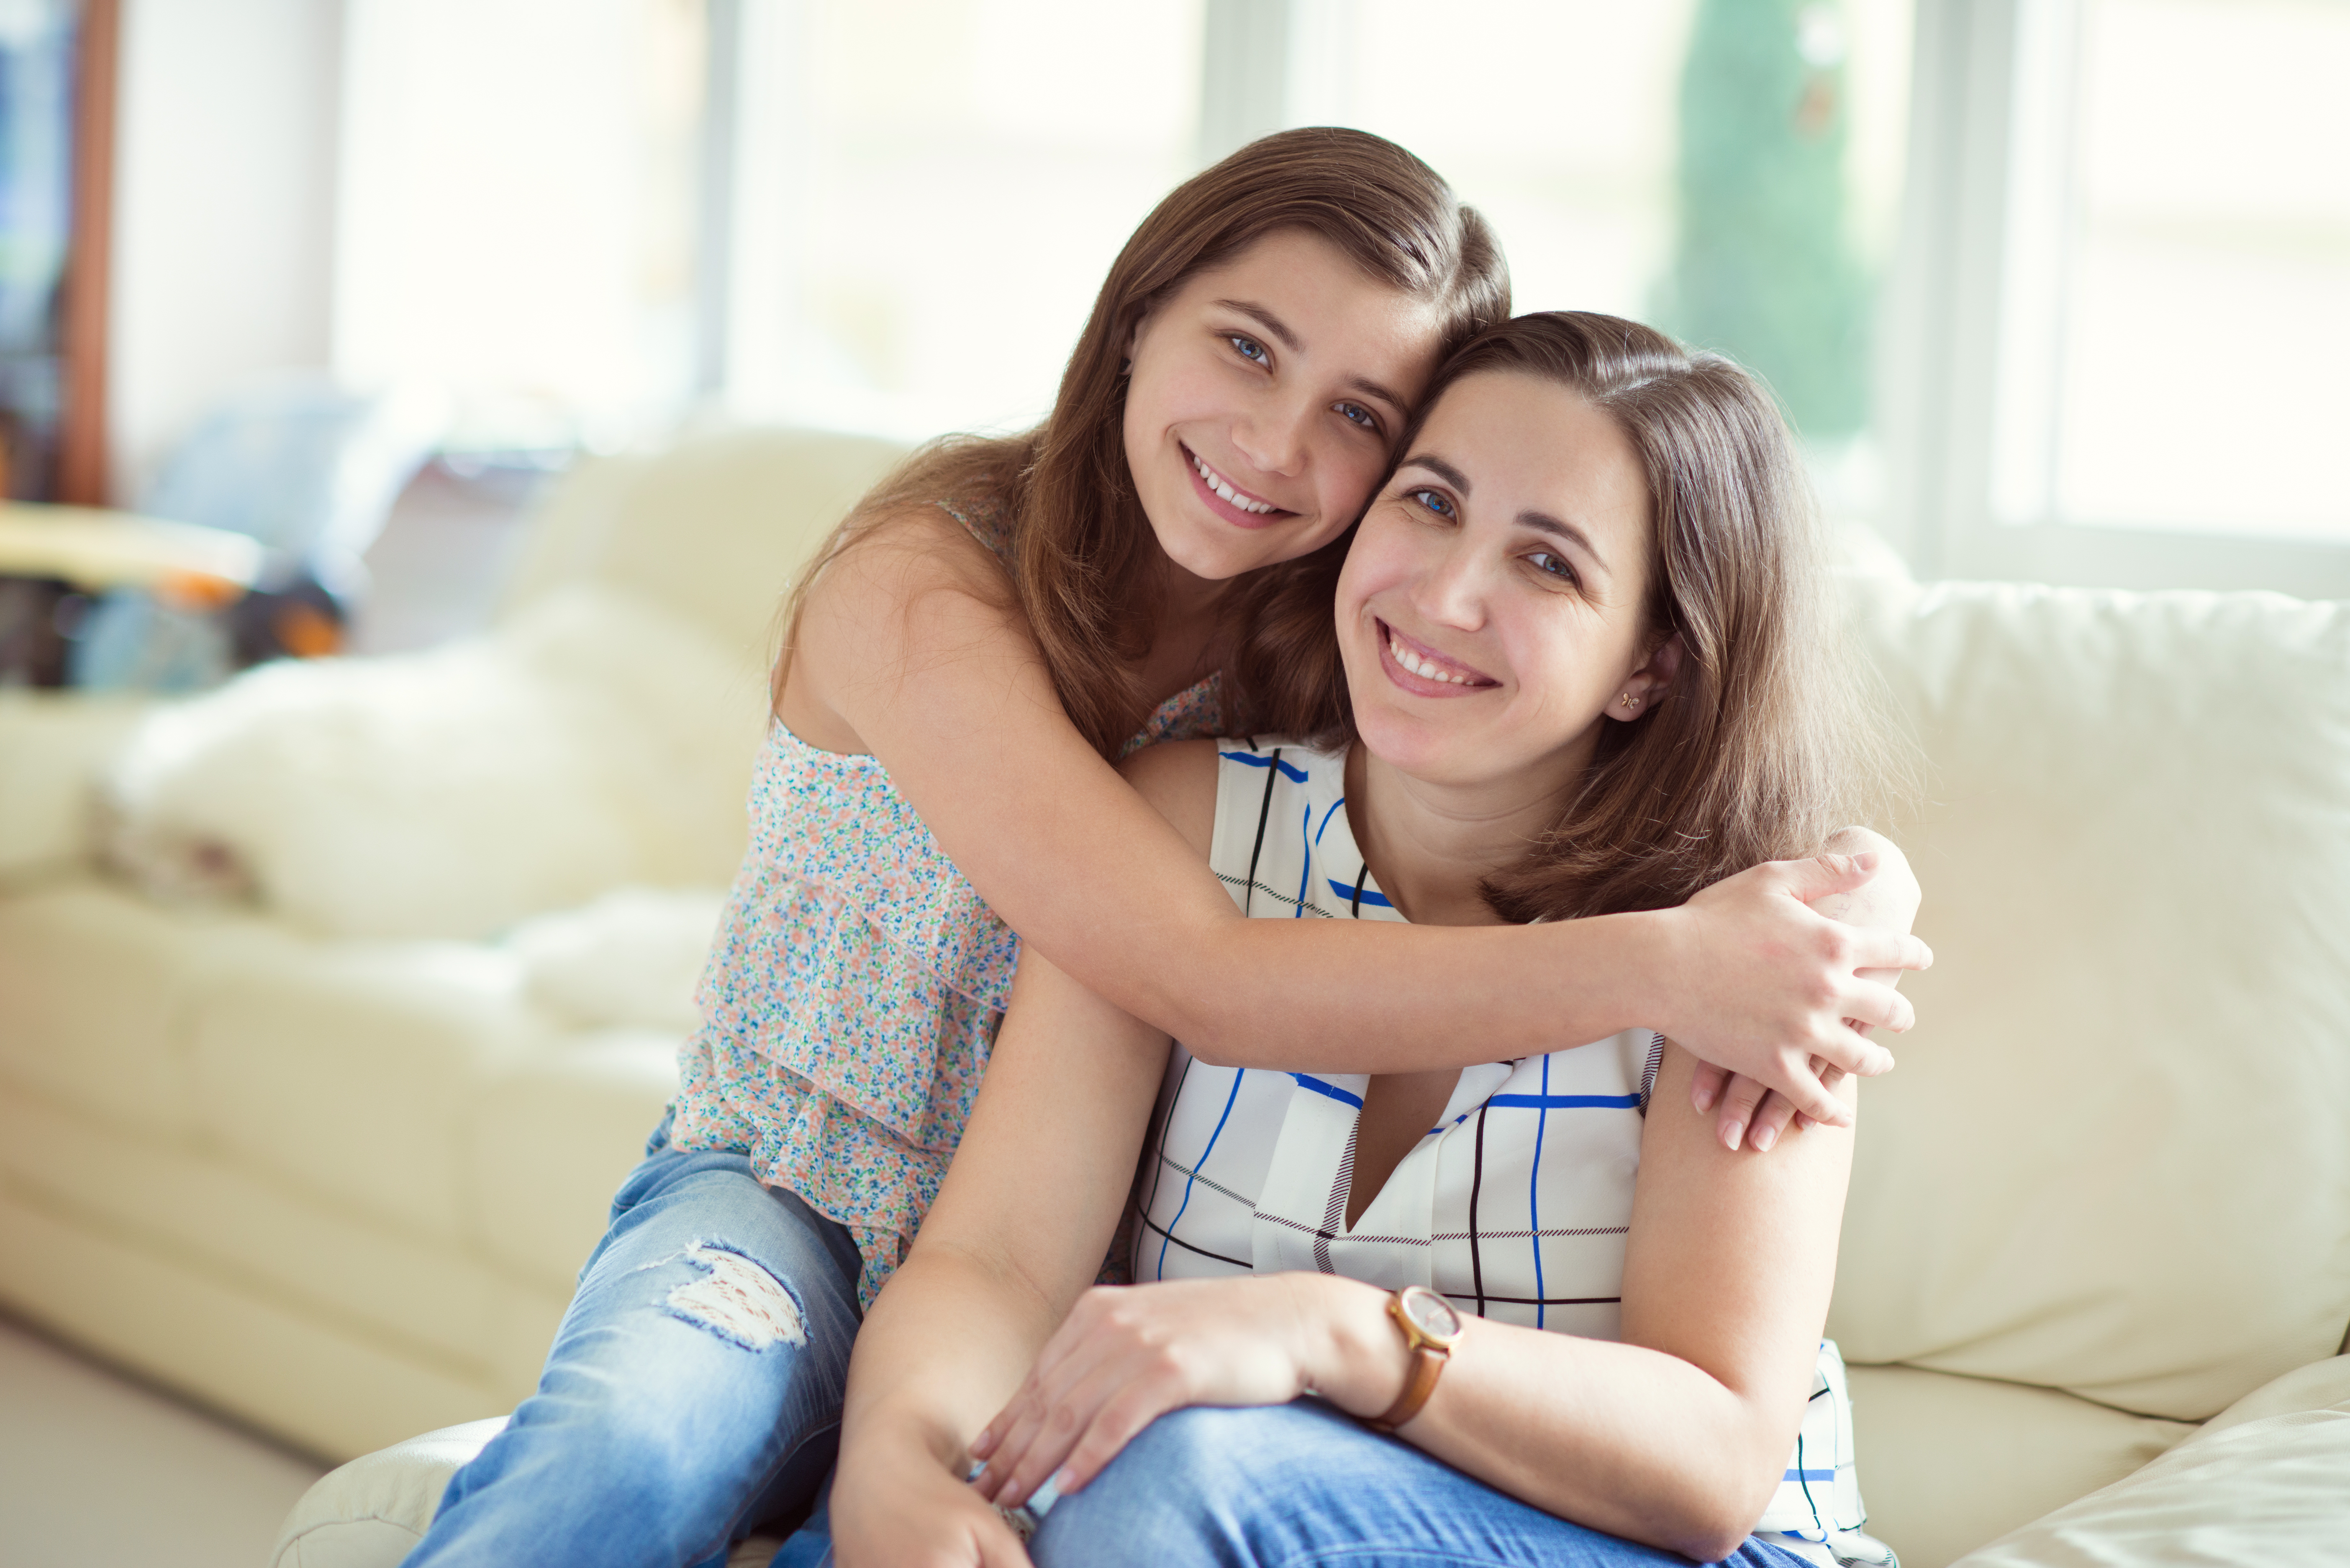 A teen girl hugs her mother | Source: Shutterstock